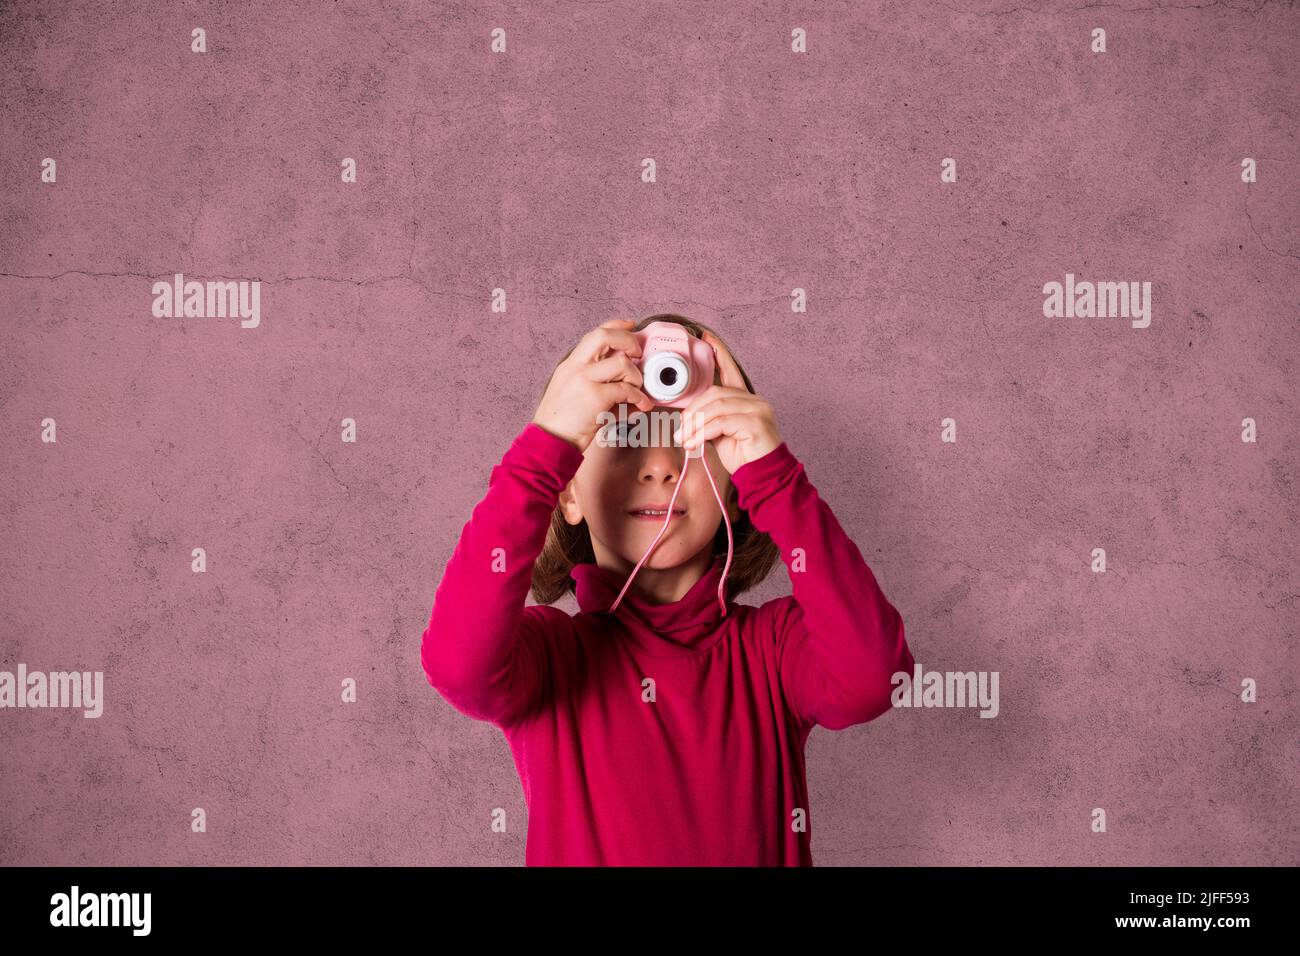 Little Girl está tomando una fotografía con la cámara de fotos de juguete sobre fondo rosa Foto de stock